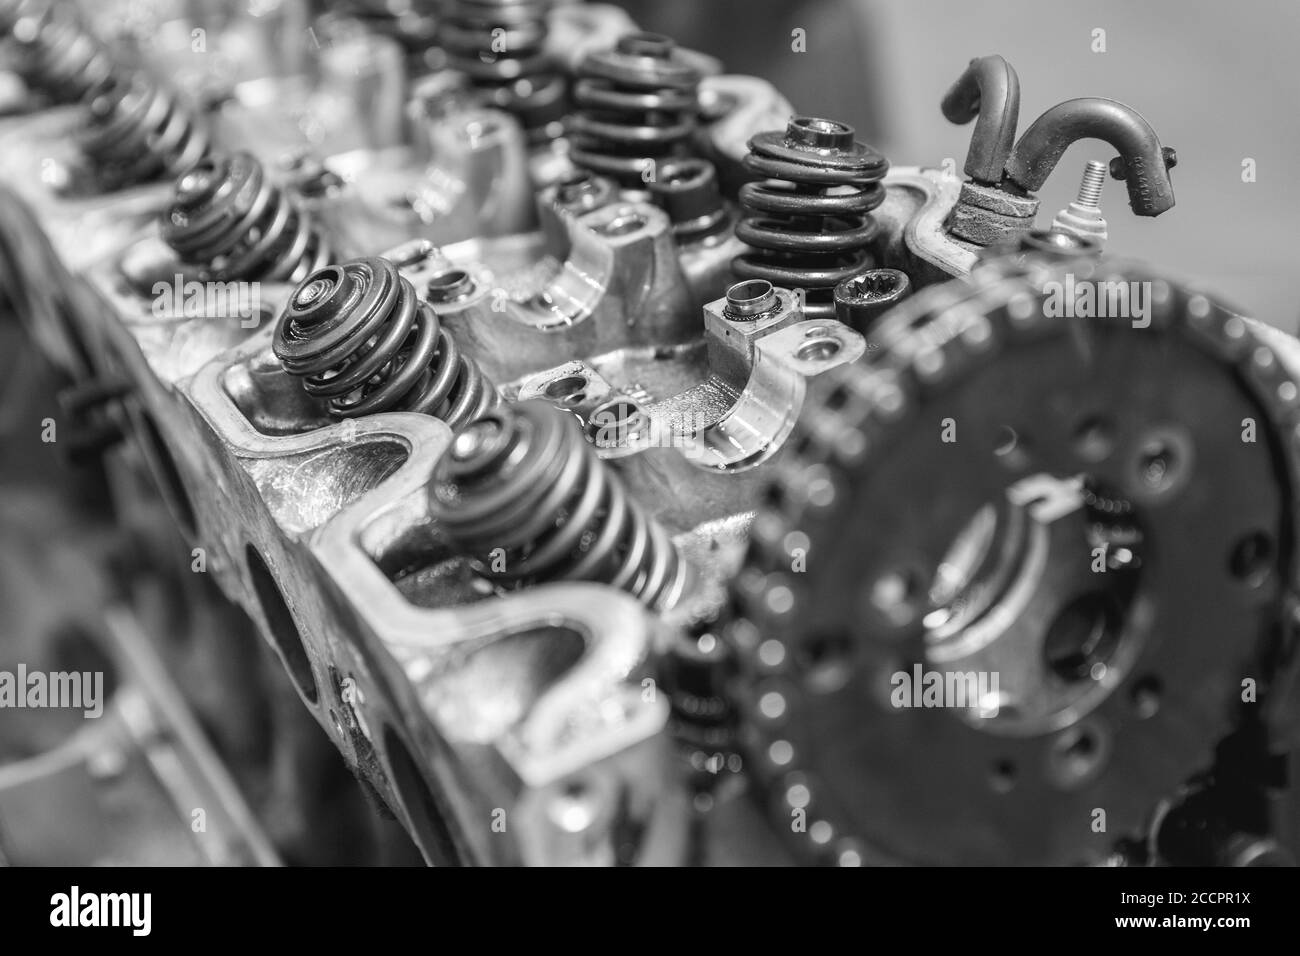 Jefe de reparación de un motor de coche. Piezas de repuesto de coches modernos, imagen en blanco y negro Foto de stock